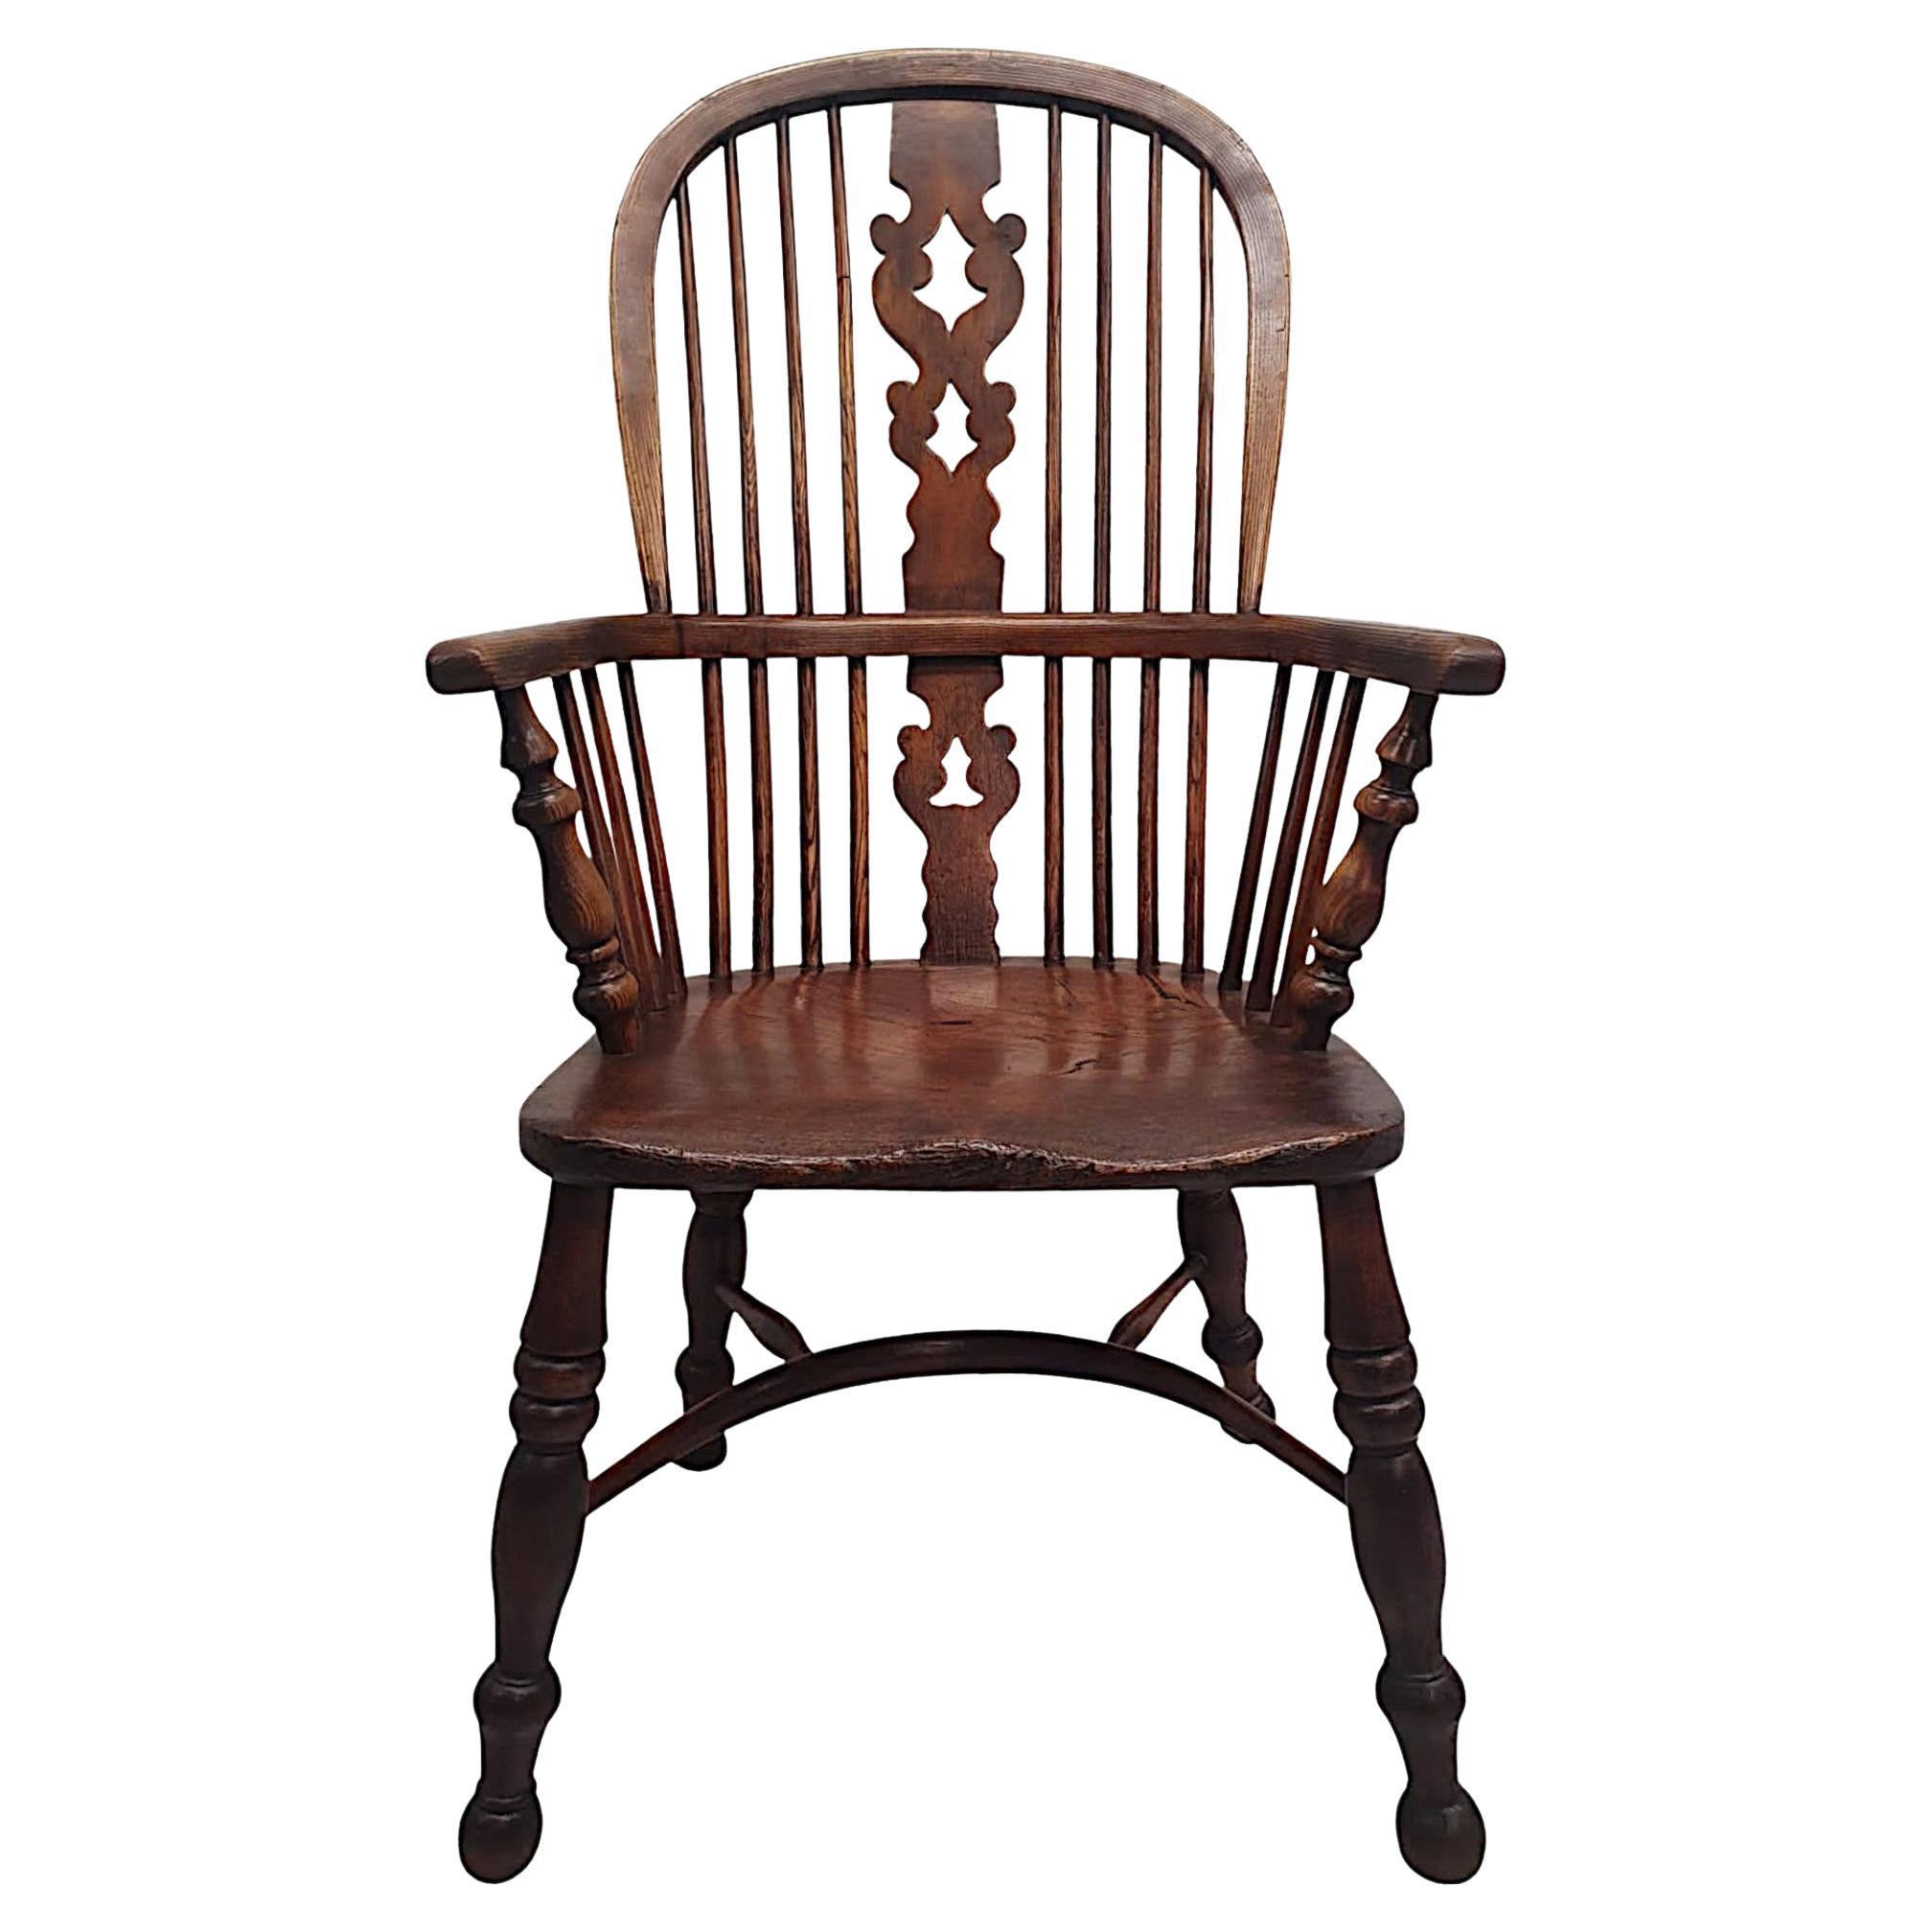 Sehr seltener und feiner Windsor-Sessel mit hoher Rückenlehne aus dem 19. Jahrhundert